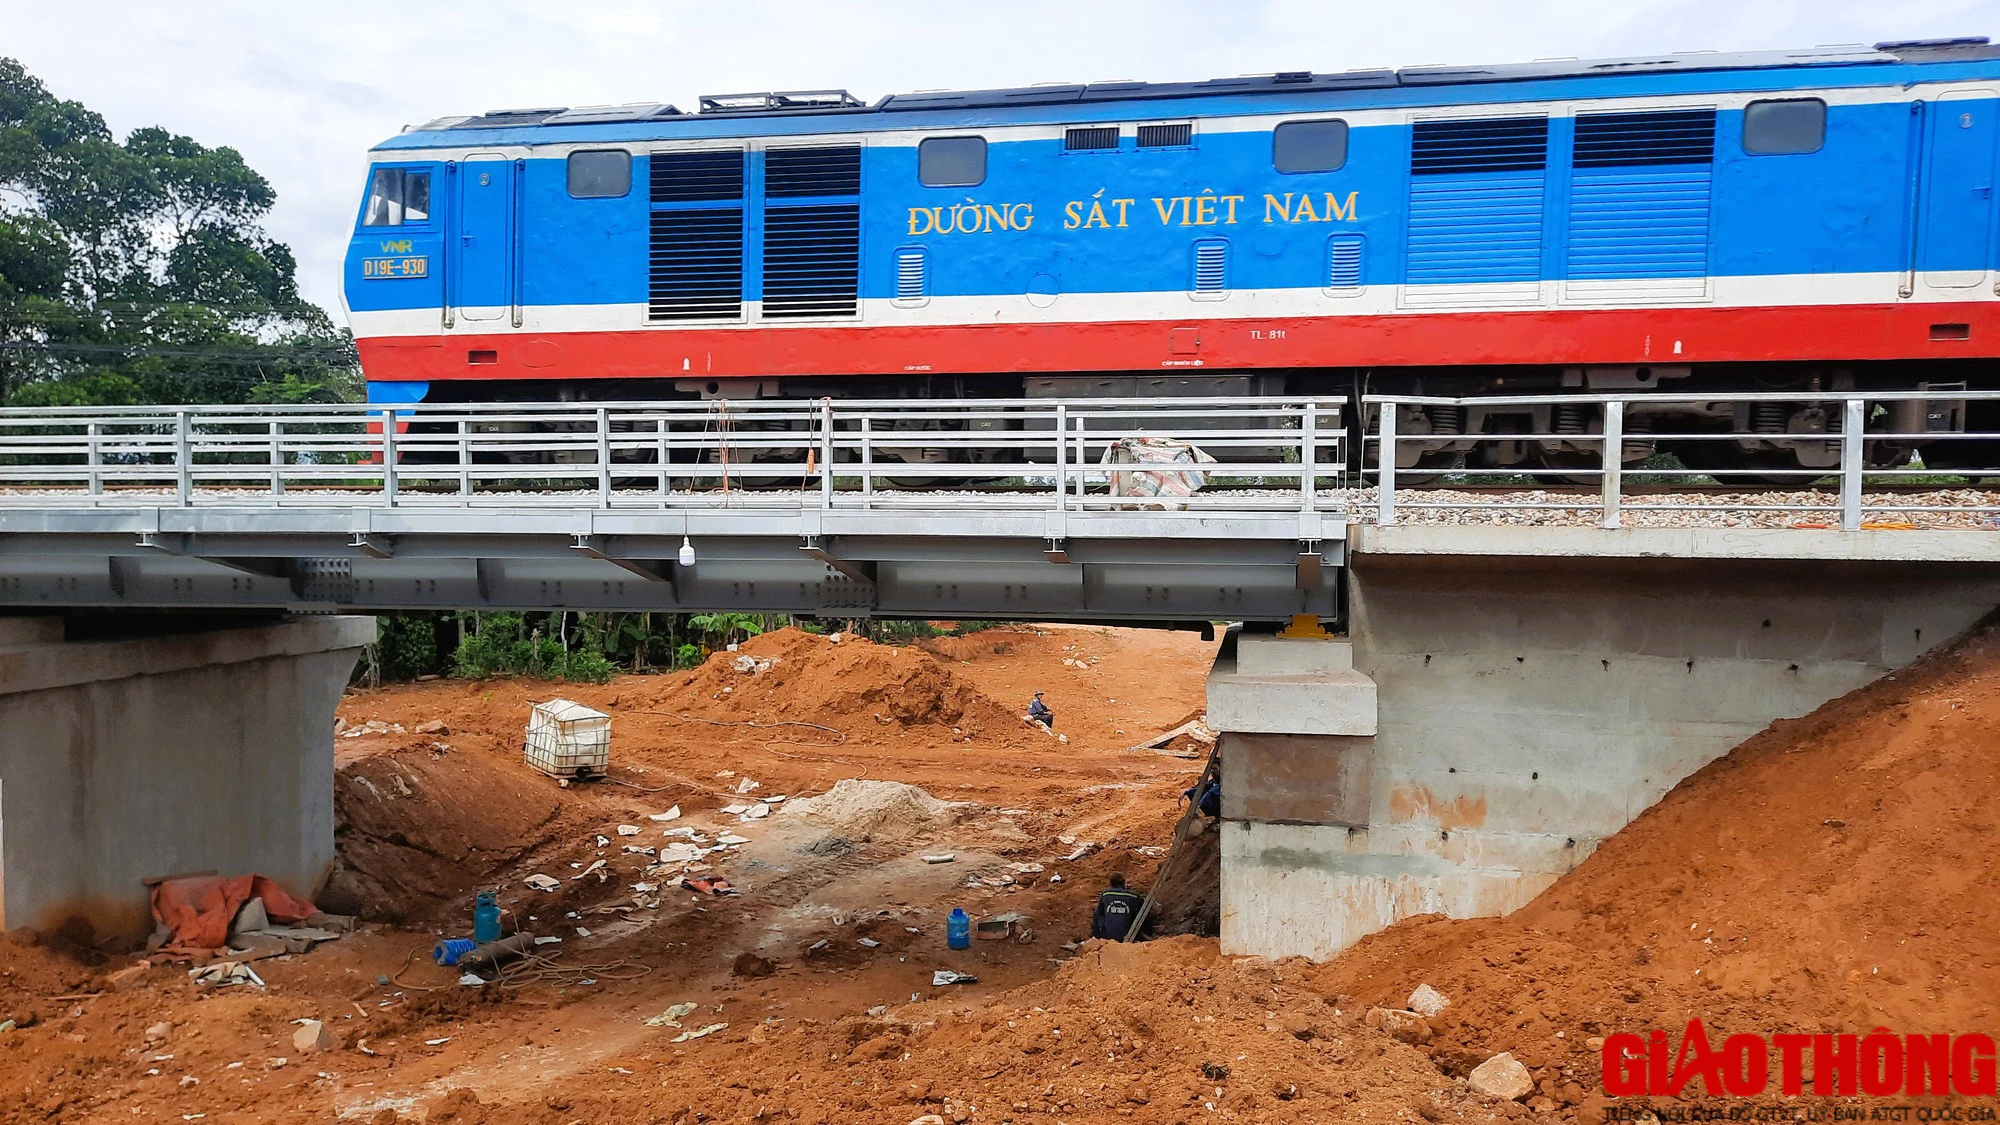 Bàn giao mặt bằng sạch hạng mục cầu chui đường sắt ở Quảng Trị trước ngày 15/9 - Ảnh 10.